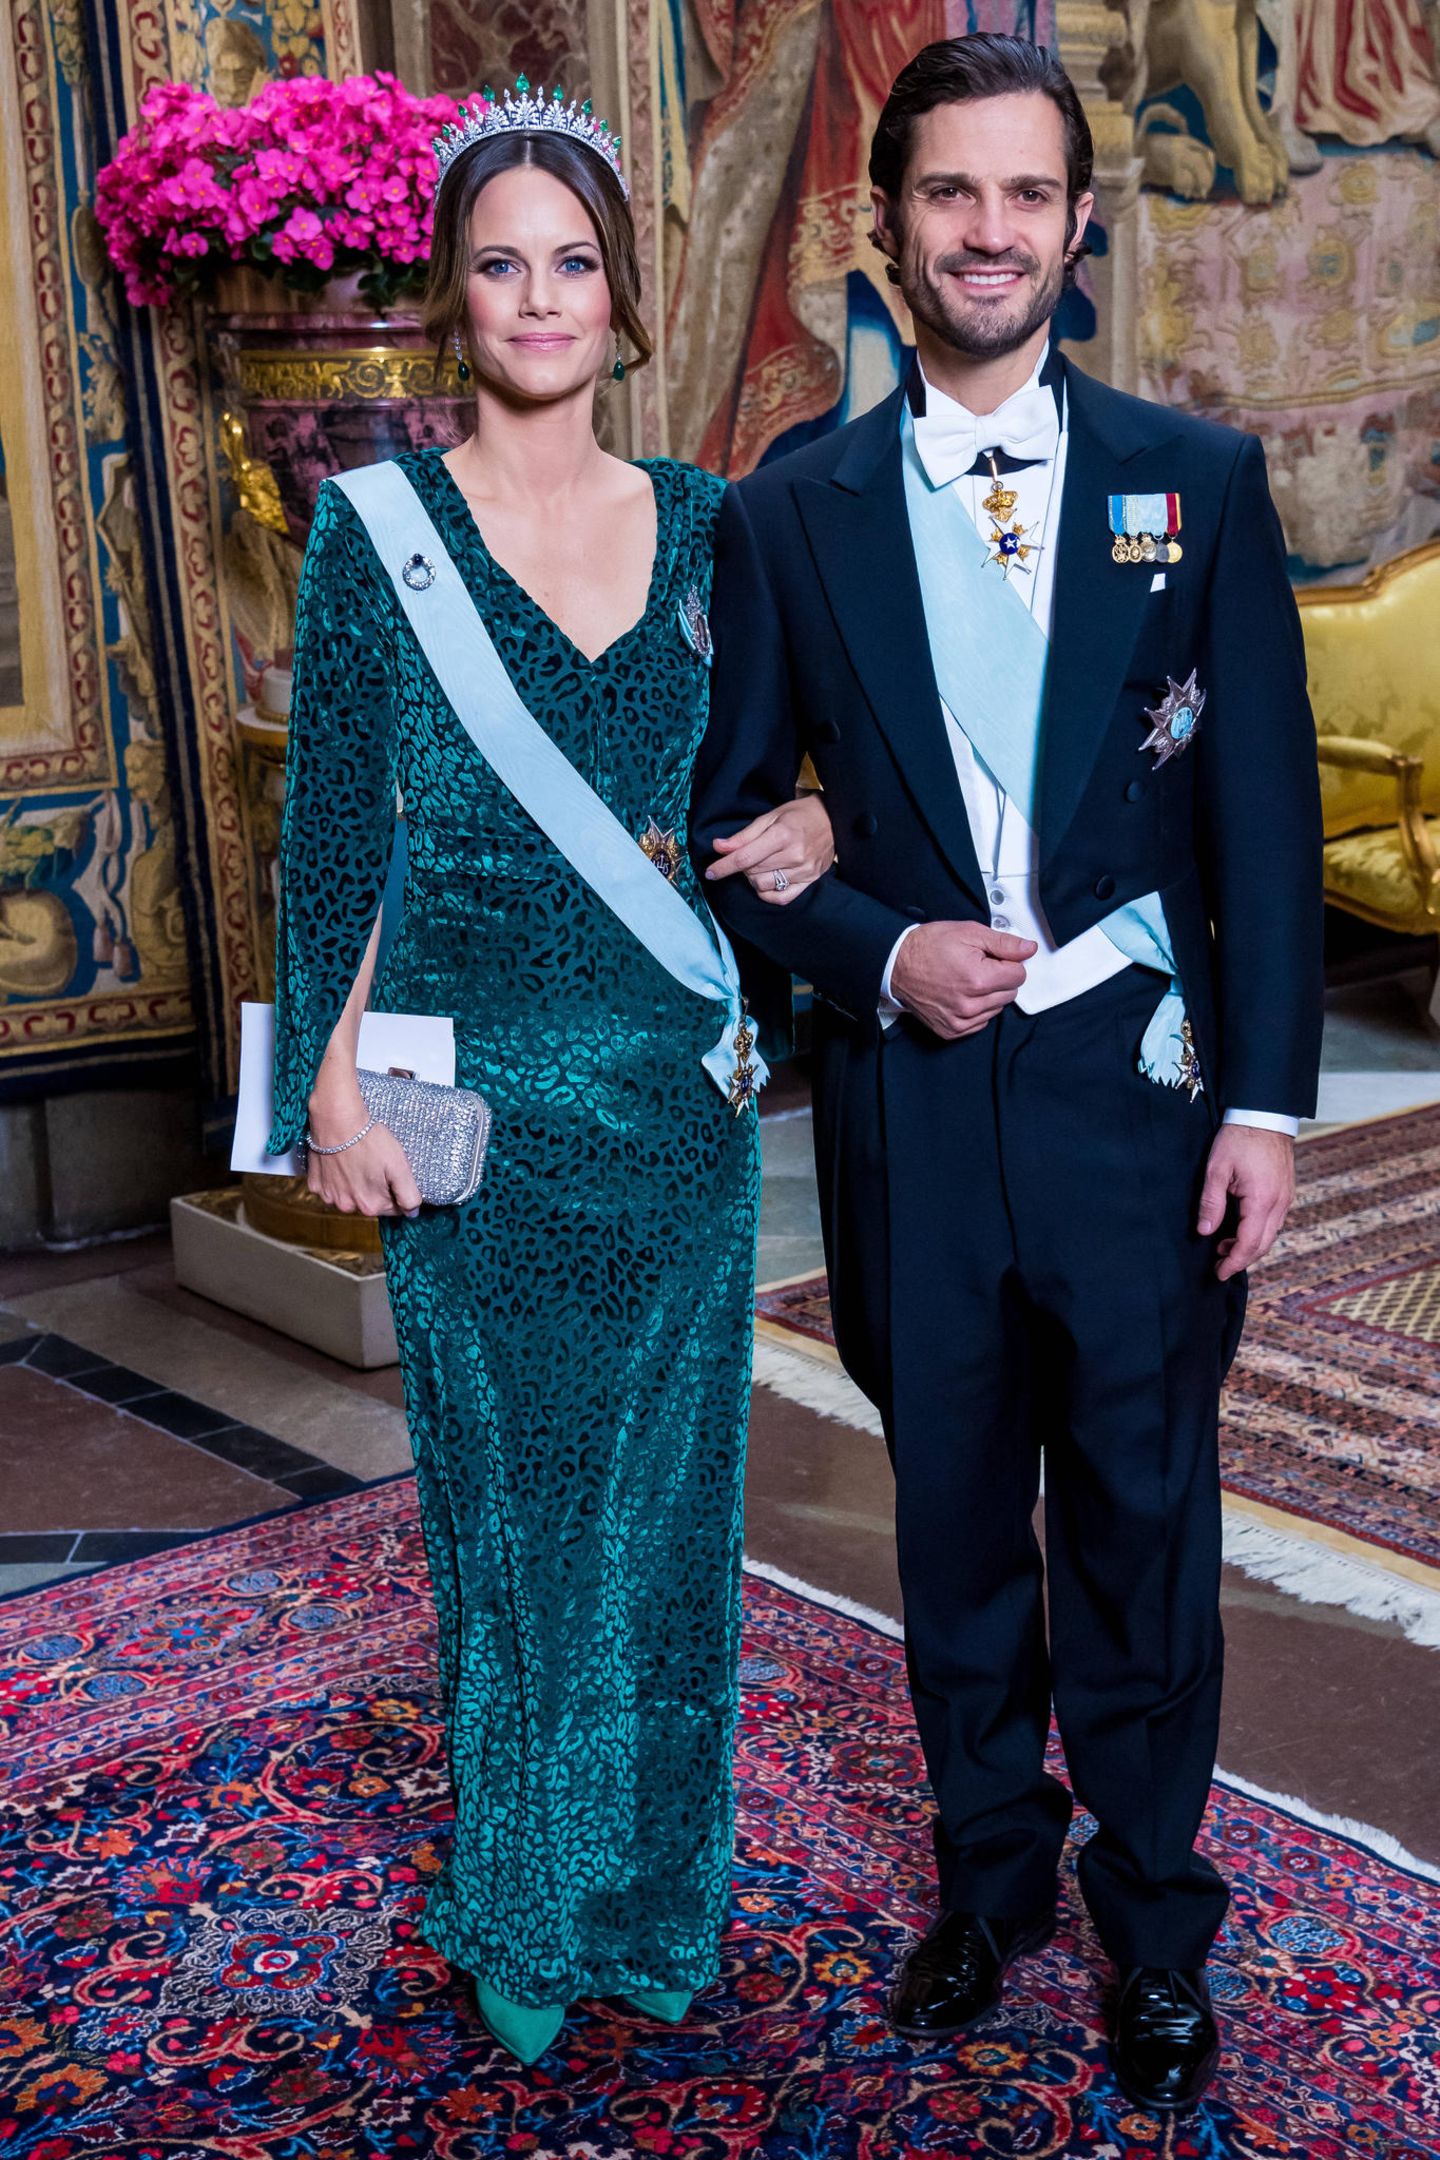 Beim offiziellen Dinner (auf schwedisch: Representationsmiddag) im königlichen Palast in ​Stockholm, erscheinen Prinz Carl Philip und Prinzessin Sofia in feierlicher Abendgarderobe. Die hübsche 34-Jährige zeigt sich in einem bodenlangen Samtkleid mit Leoparden-Muster und Cape-Schnitt des schwedischen Labels "By Malina". Dazu trägt sie eine funkelnde Tiara und eine Clutch mit Glitzerapplikationen. Die Kombination aus Samt und Strass sowie dem dezenten Leo-Muster des Kleids ist Sofia jedenfalls sehr gelungen.  